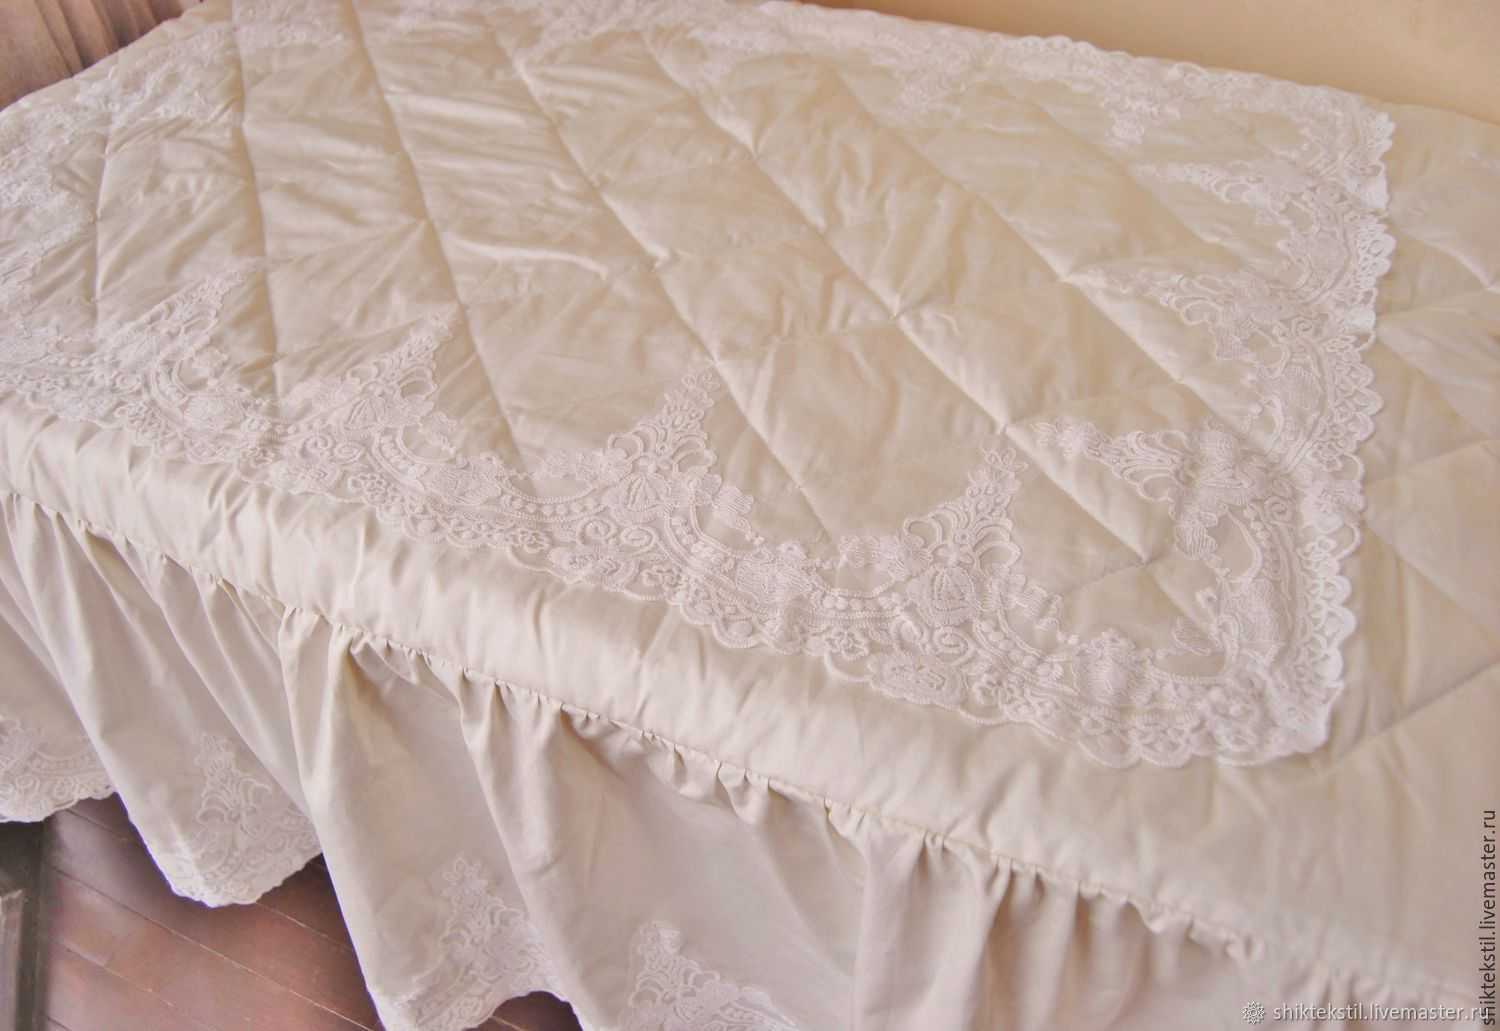 Ткань для покрывала: на кровать, на диван, для пледа, как называется